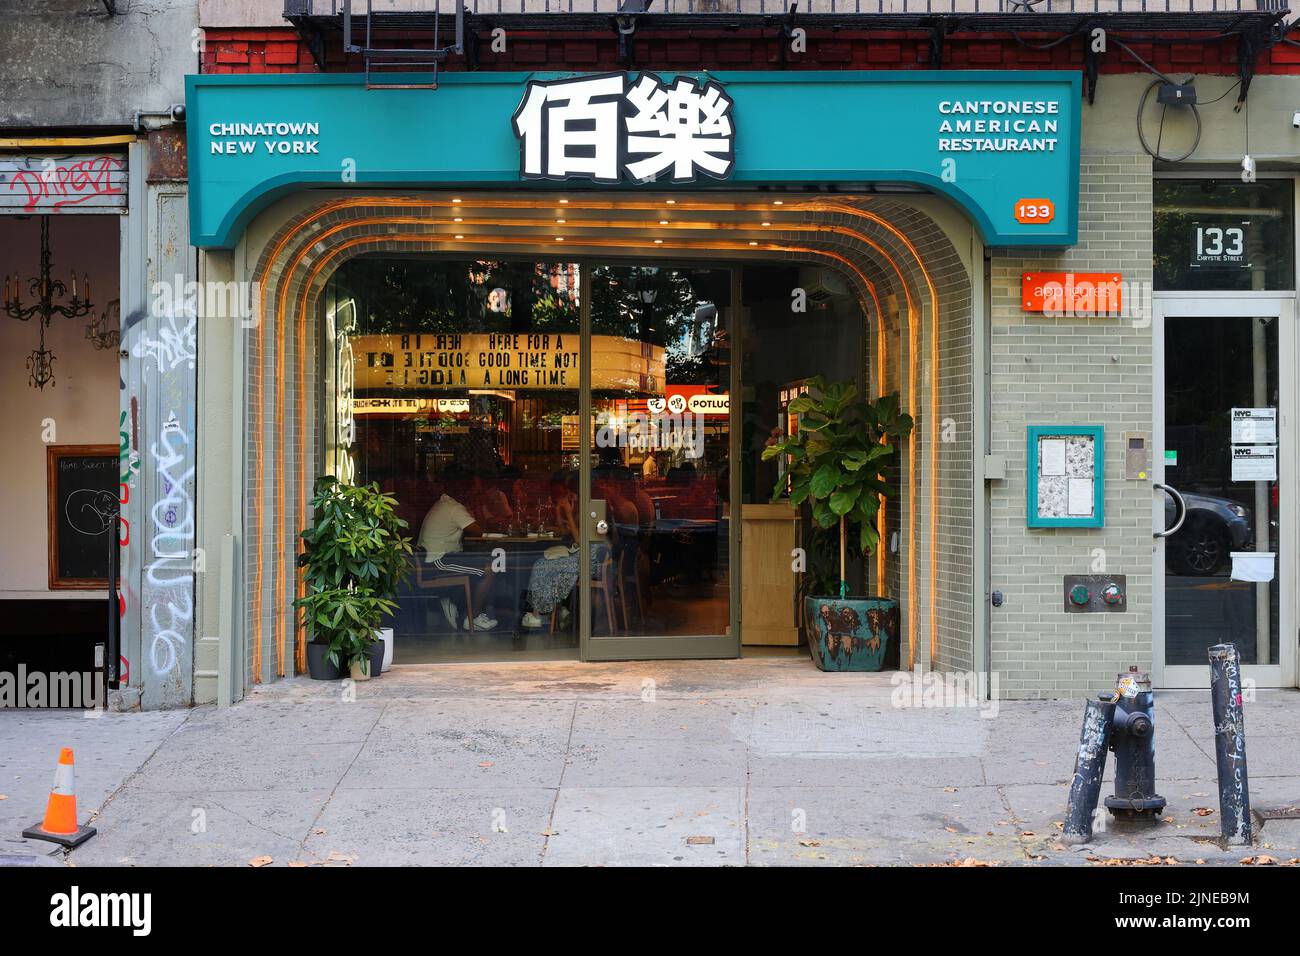 Potluck Club 百樂, 133 Chrystie St, New York, NY. Façade extérieure d'un restaurant chinois cantonais dans le quartier chinois de Manhattan/Lower East Side. Banque D'Images